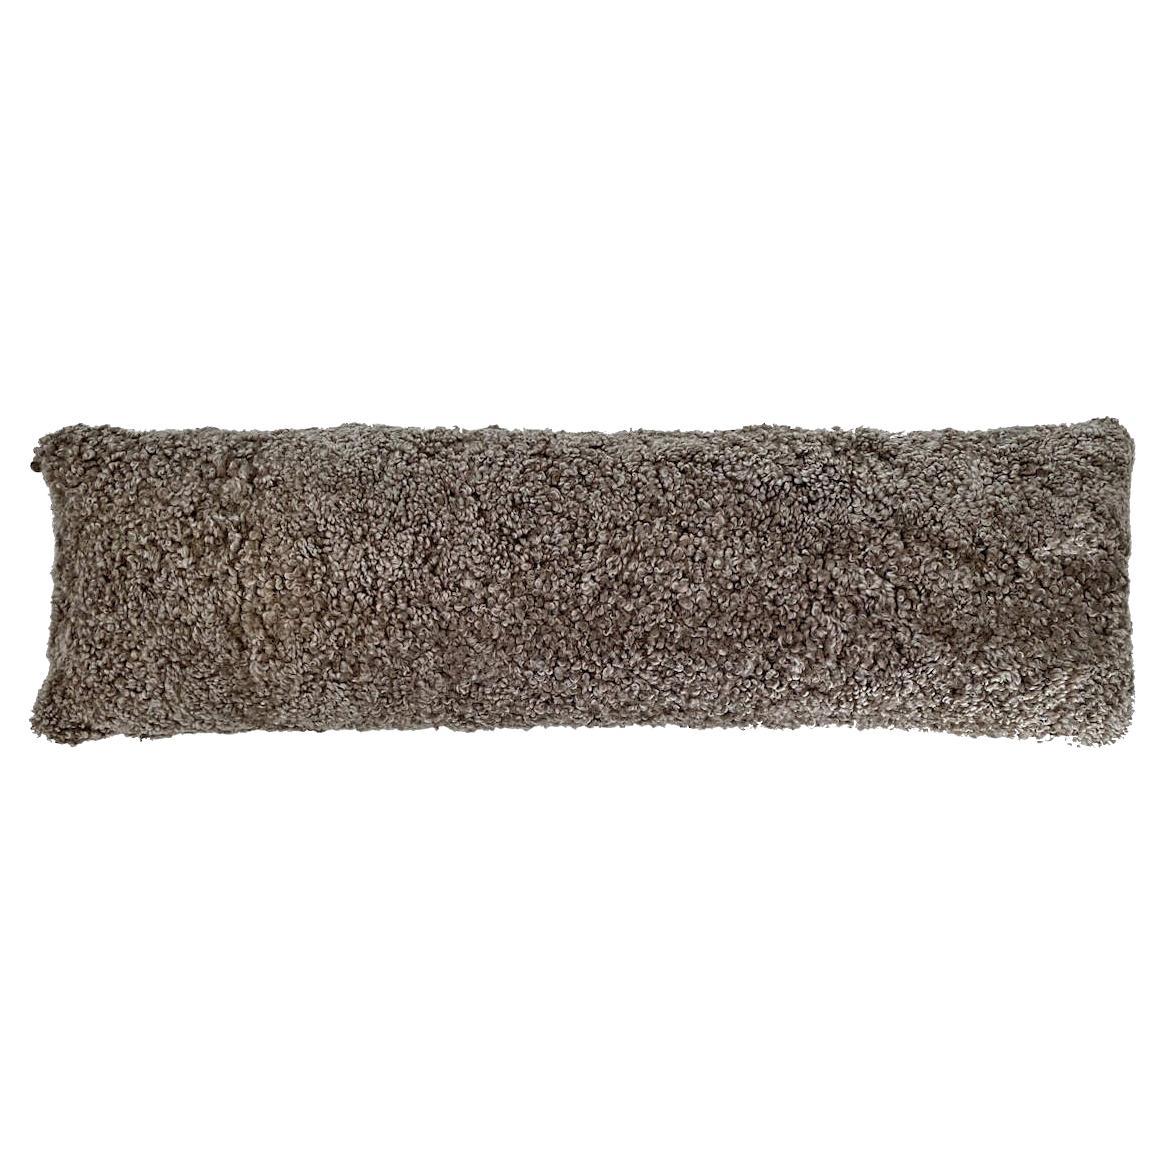 Boucle Lumbar Pillow - Shearling Sheepskin 14x35" For Sale